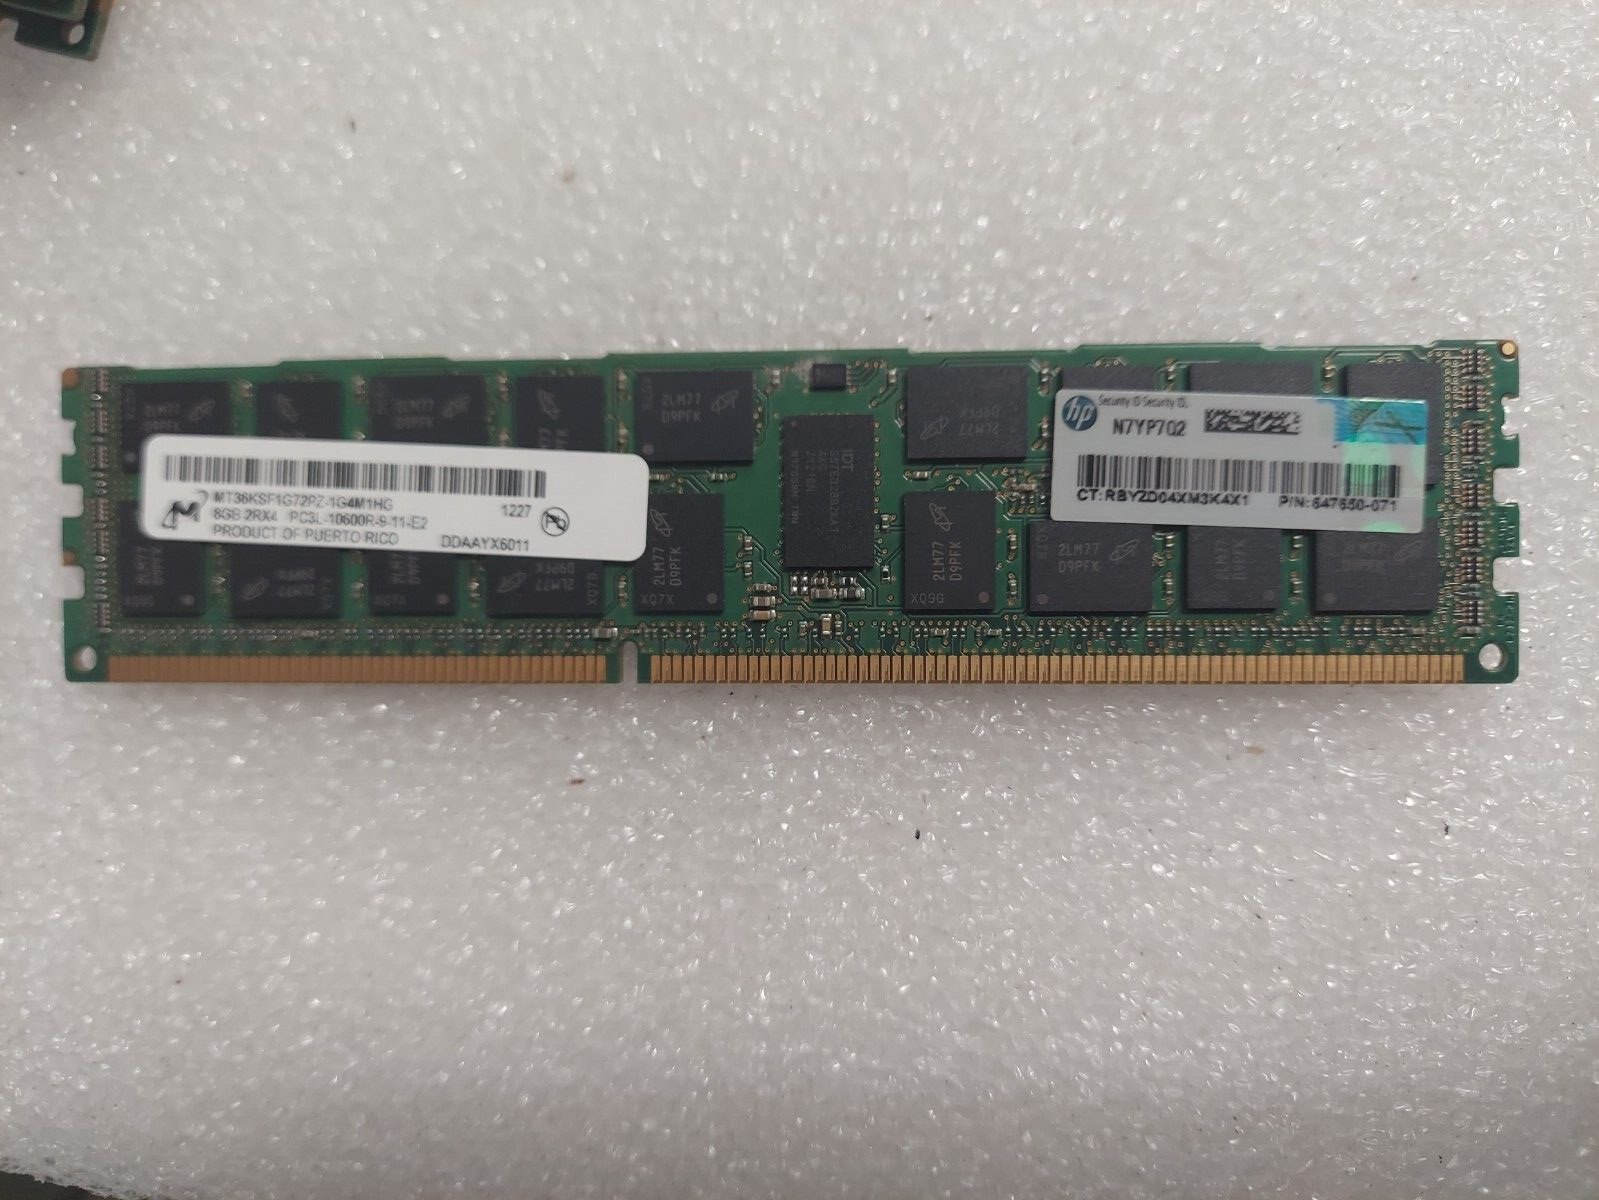 Lot of 4x HP 647650-071 8GB 2Rx4 PC3L-10600 DDR3-1333MHz ECC RAM Micron